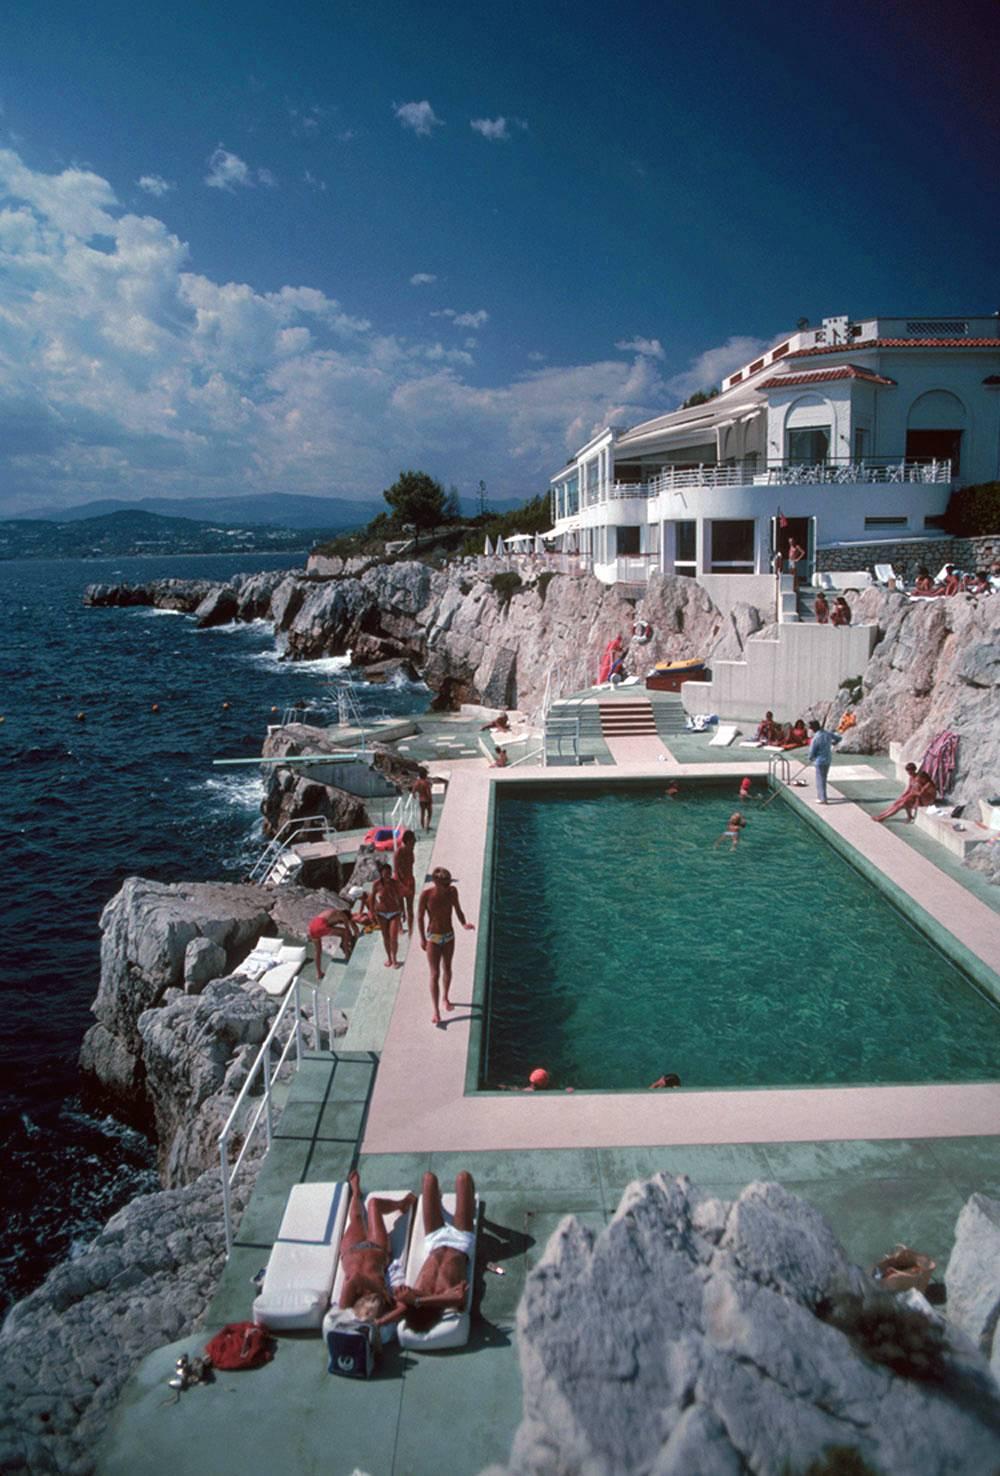 Hôtel du Cap Eden-Roc, Estate Edition, Poolside in Antibes, France